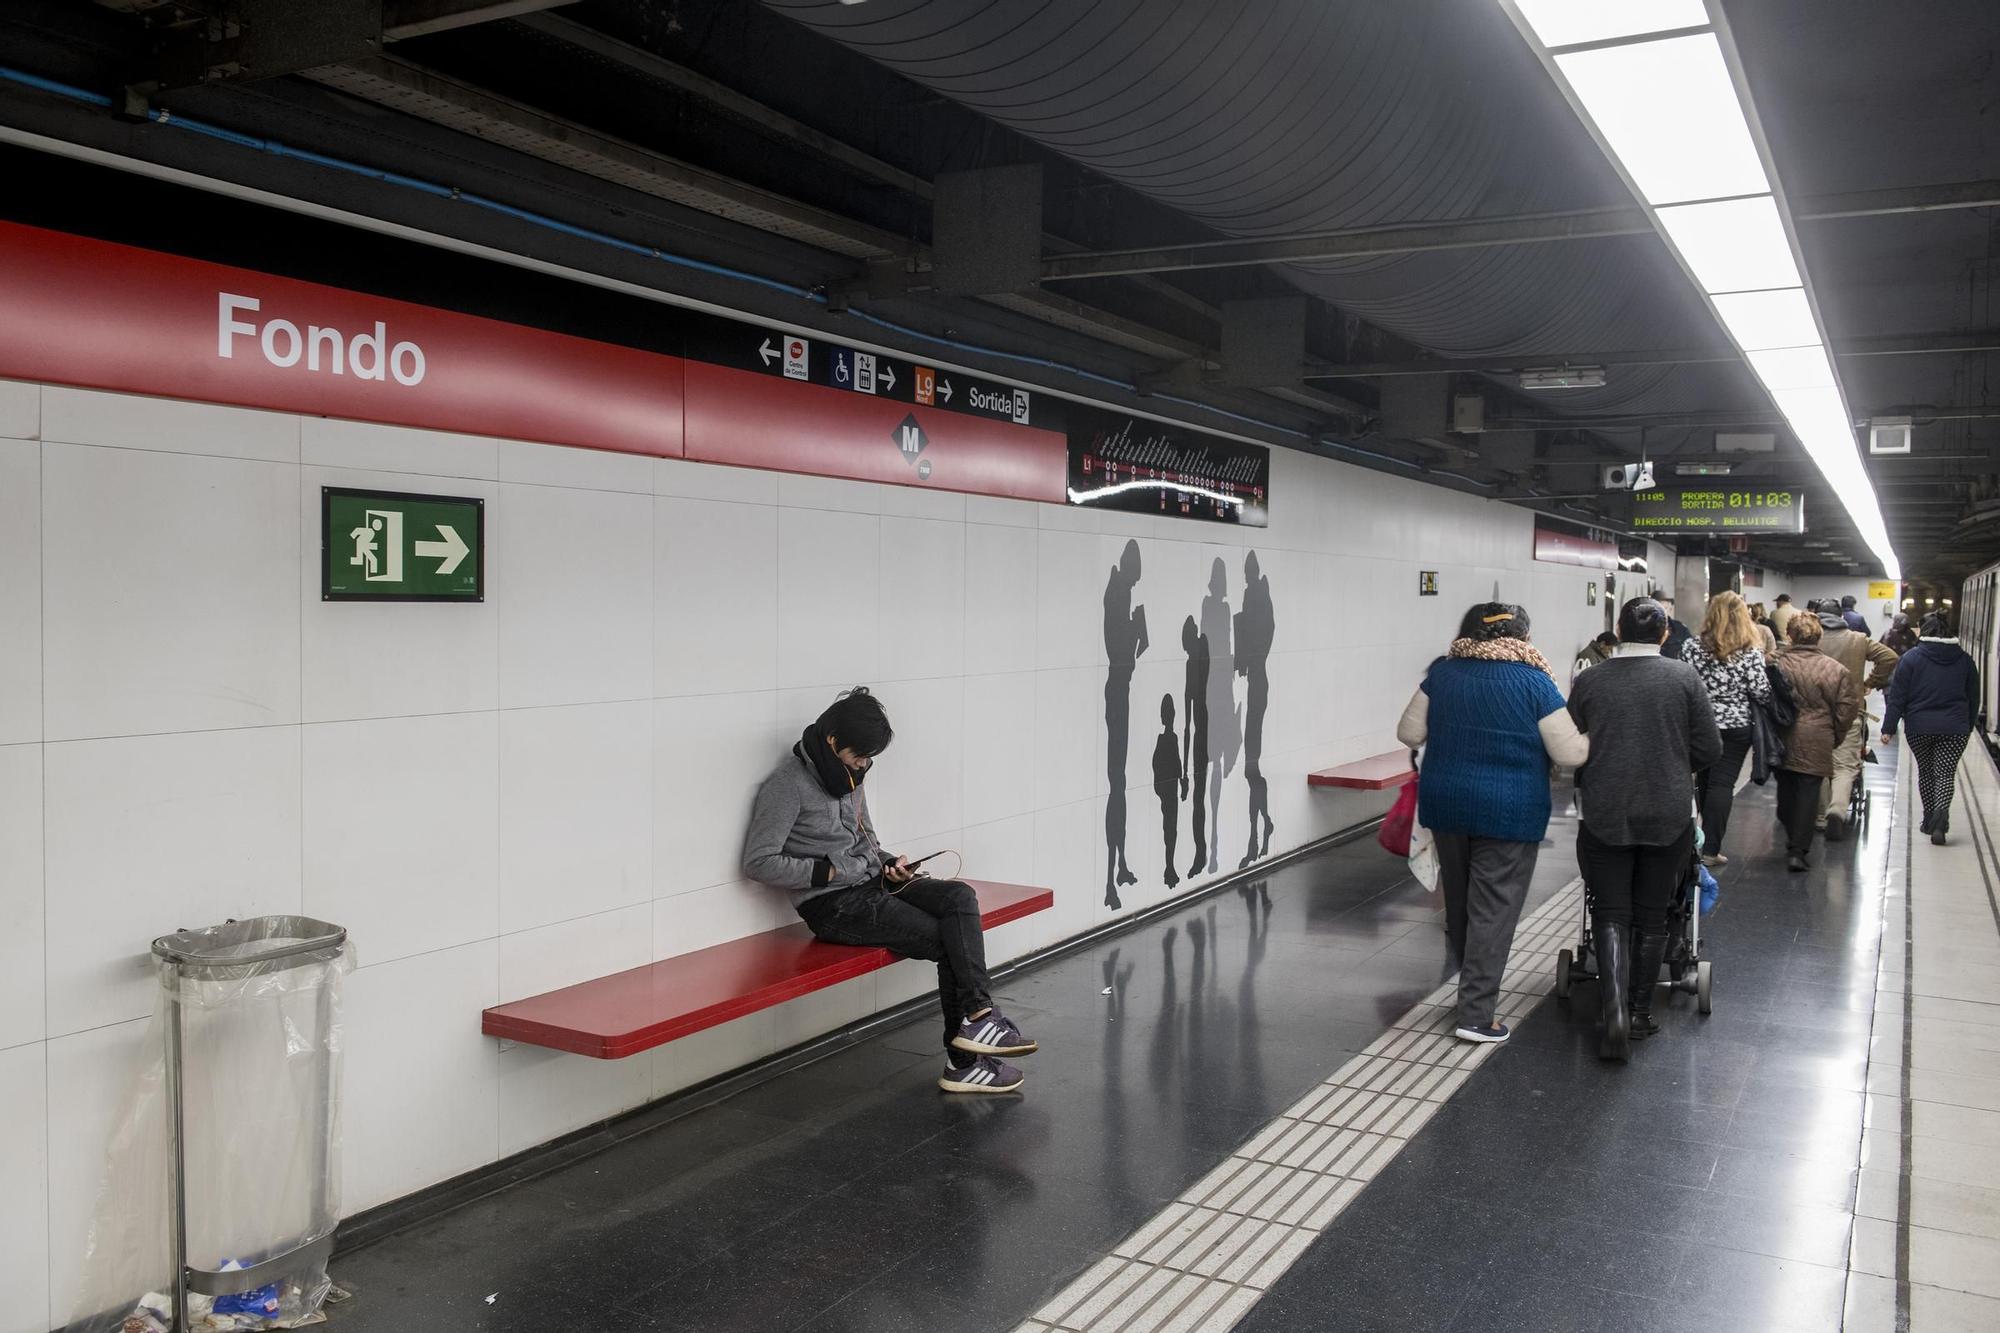 Una imagen de la estación de Fondo, en Santa Coloma de Gramenet, final de la línea 1 del metro de Barcelona.